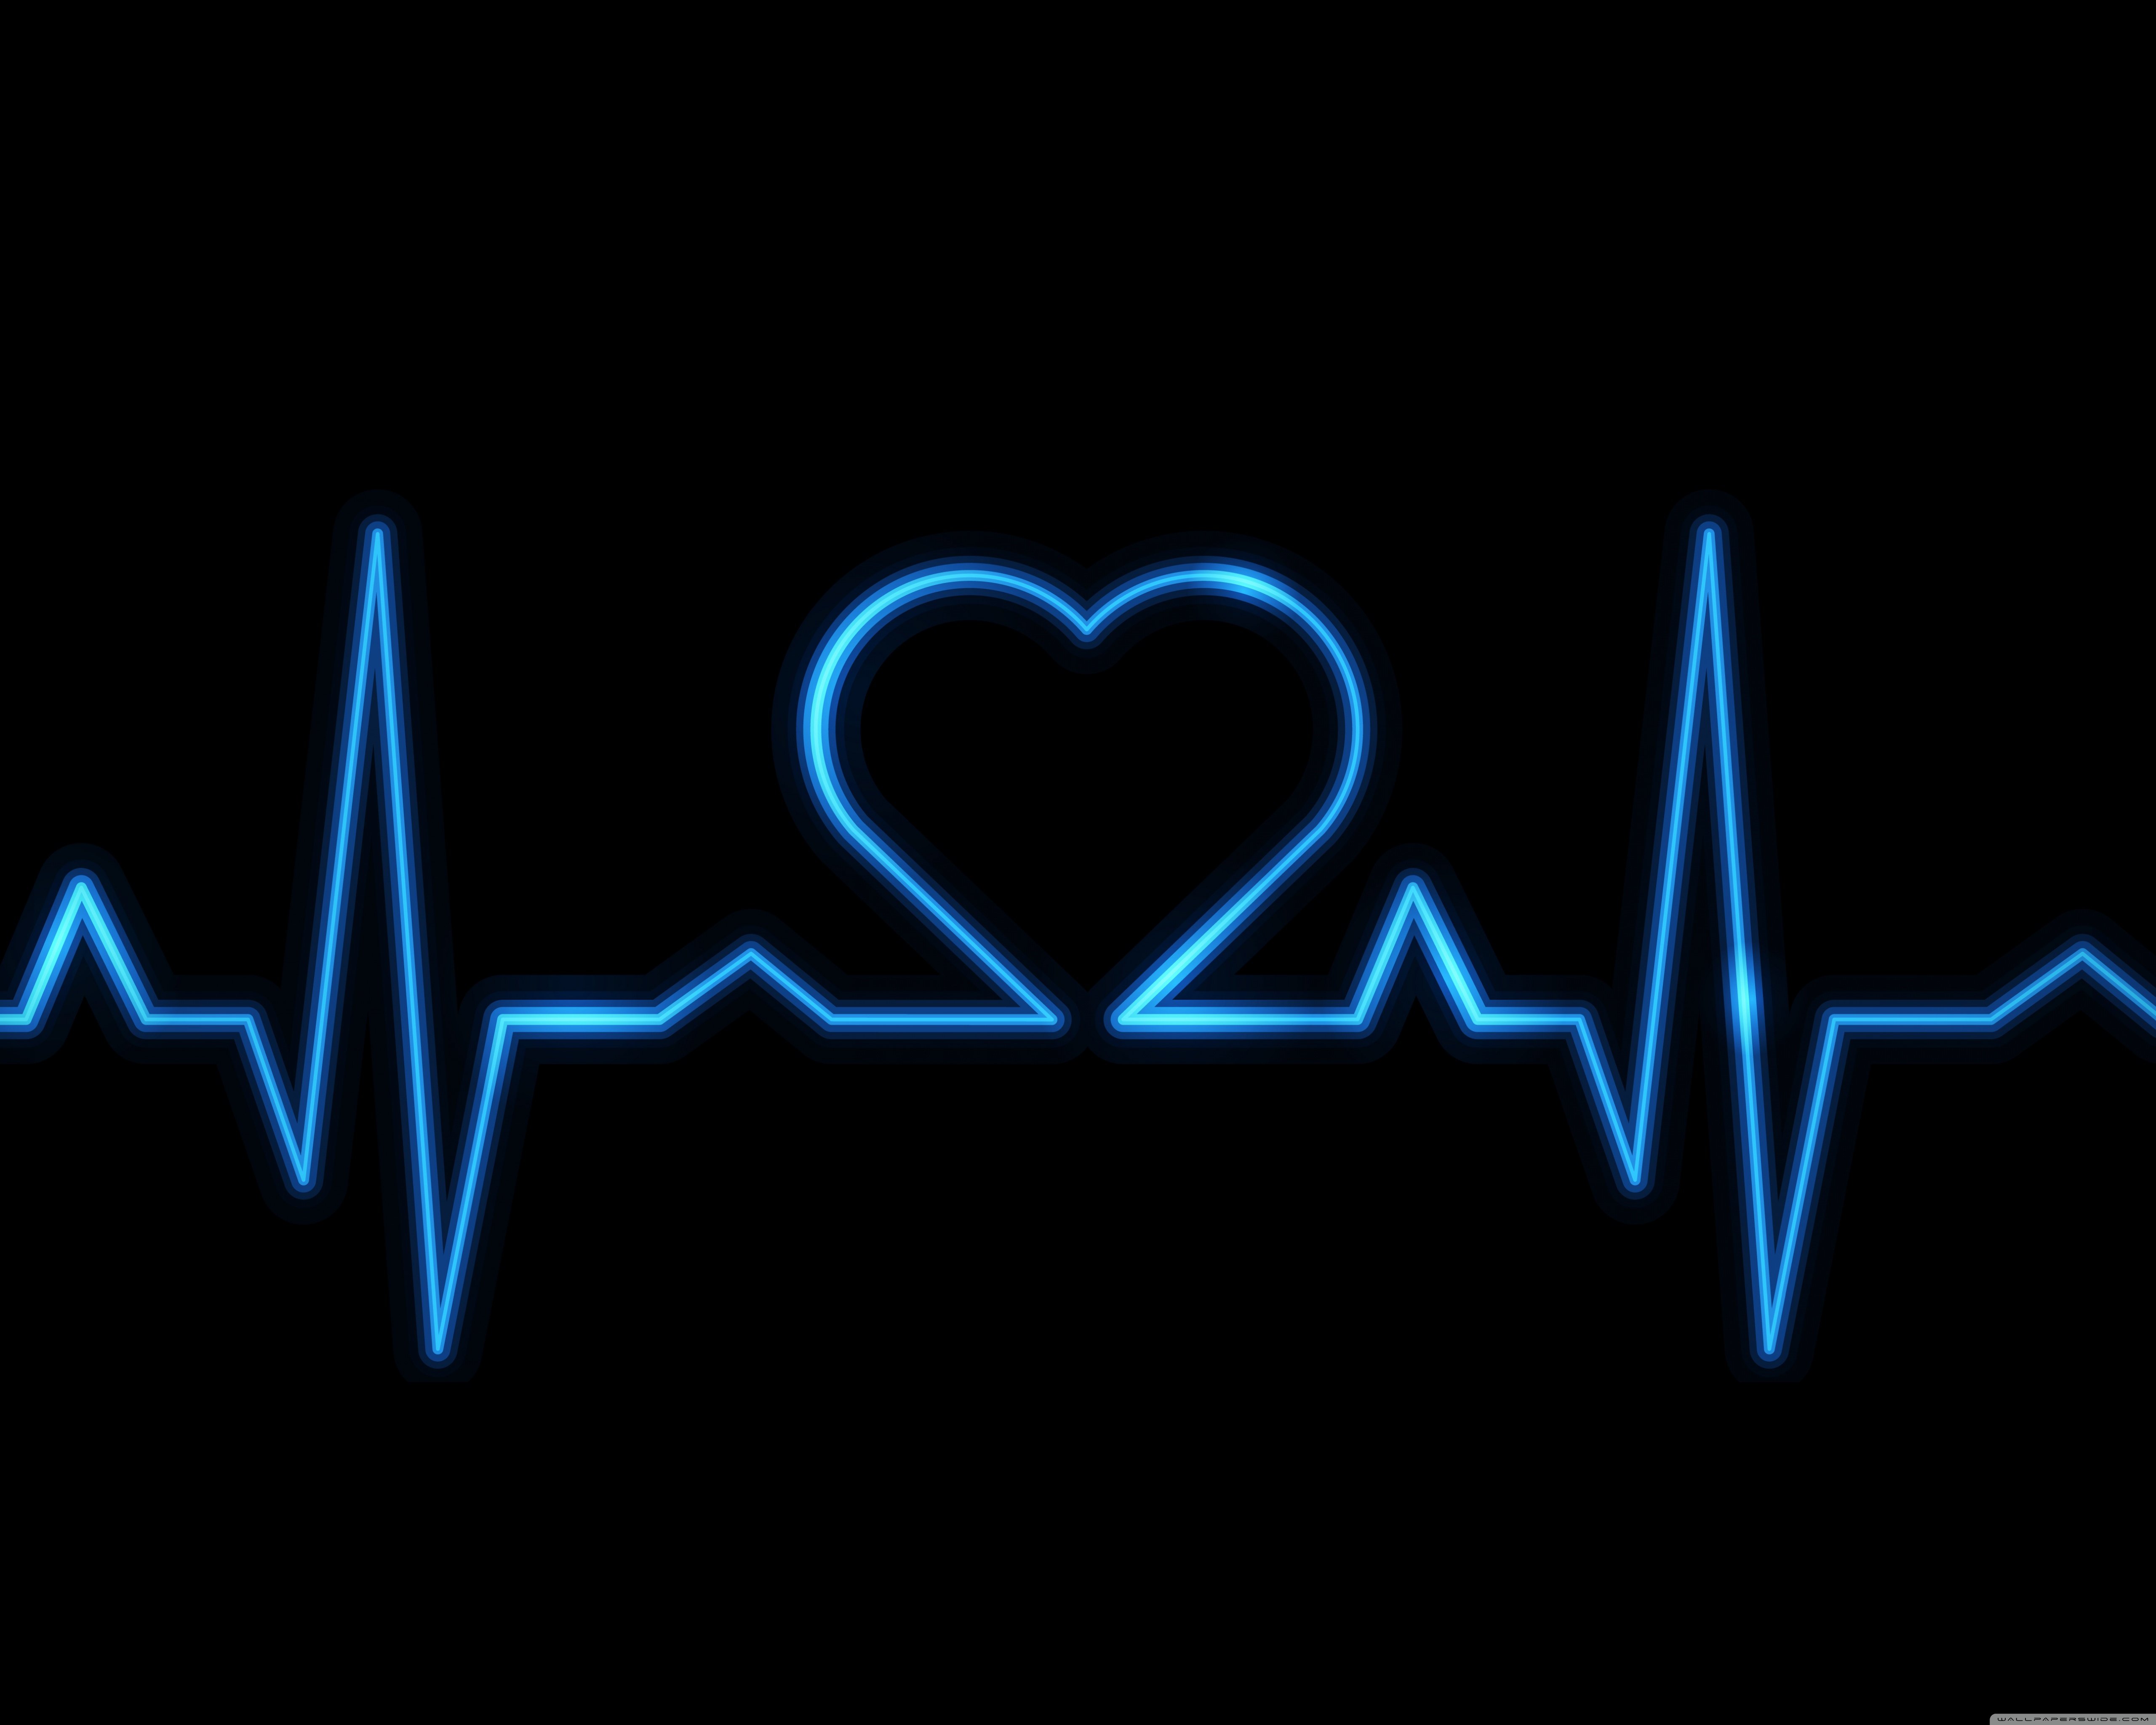 Видна пульсация. Пульс. Пульс сердца. Пульс в виде сердца. Сердцебиение кардиограмма.